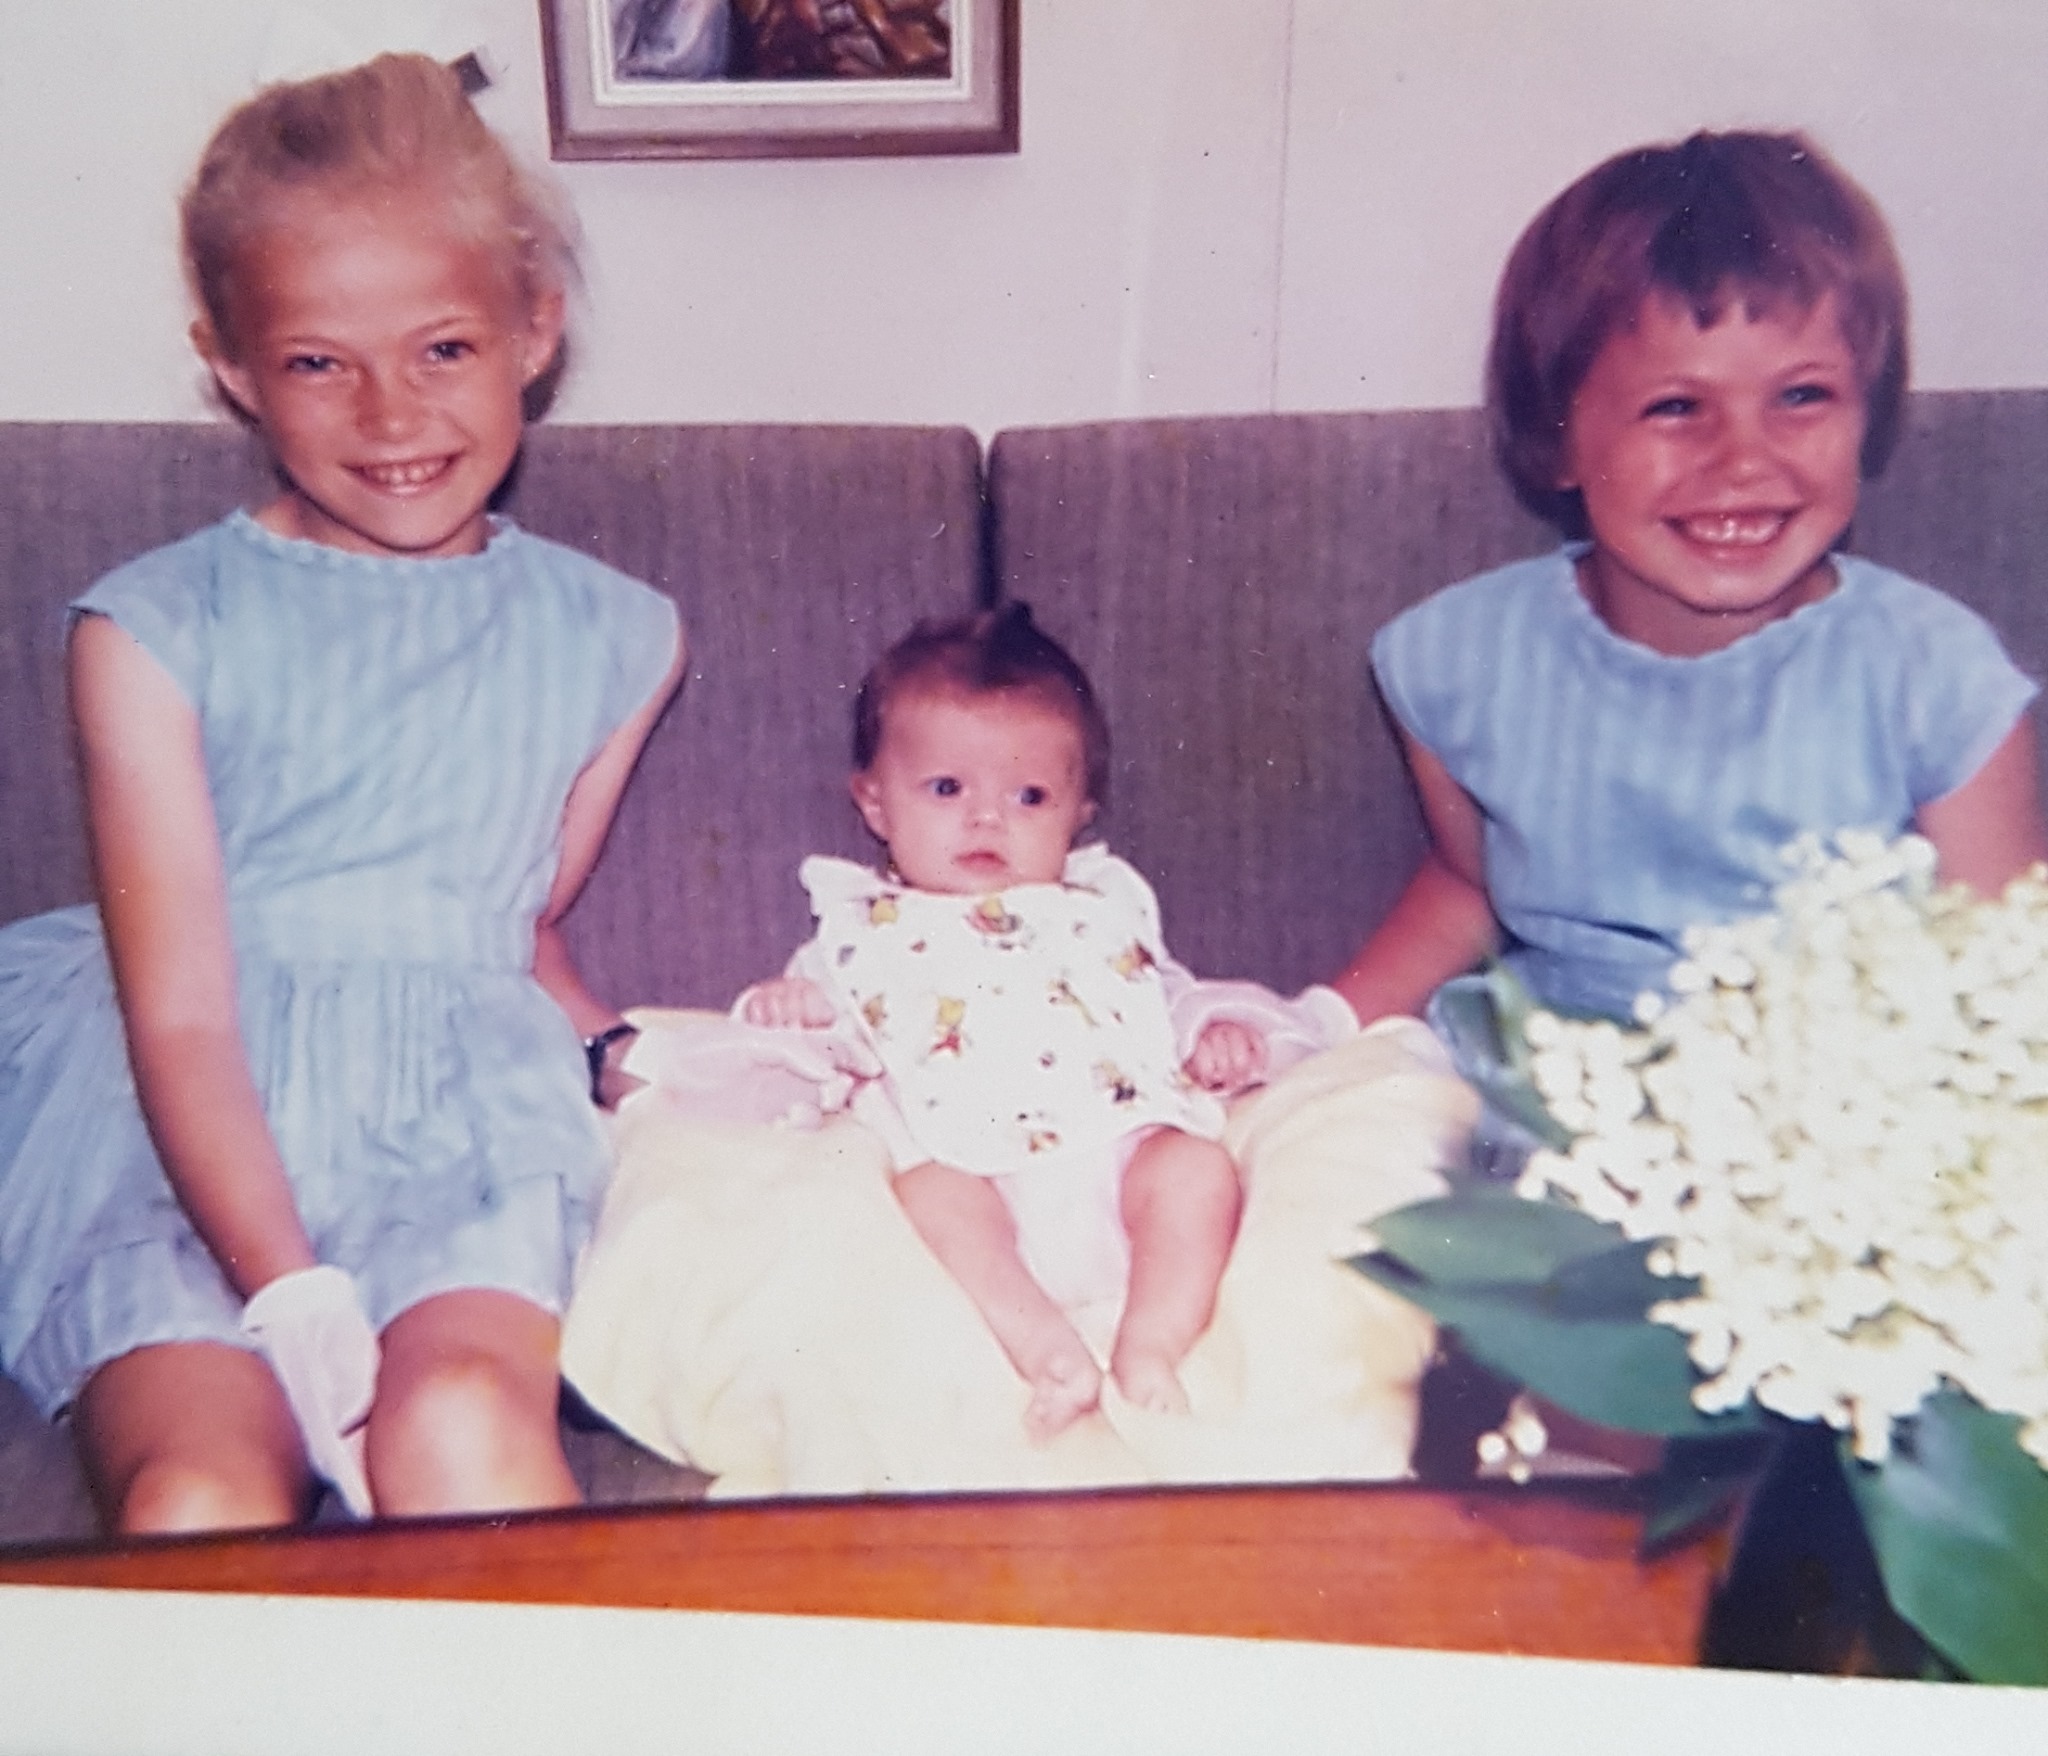 Helle-Viv og storesøstrene som barn. Helle-Viv sitter i midten og er minst, iført en hvit kjole. De to storesøstrene sitter på hver sin side like blå kjoler. Alle smiler til kameraet. 